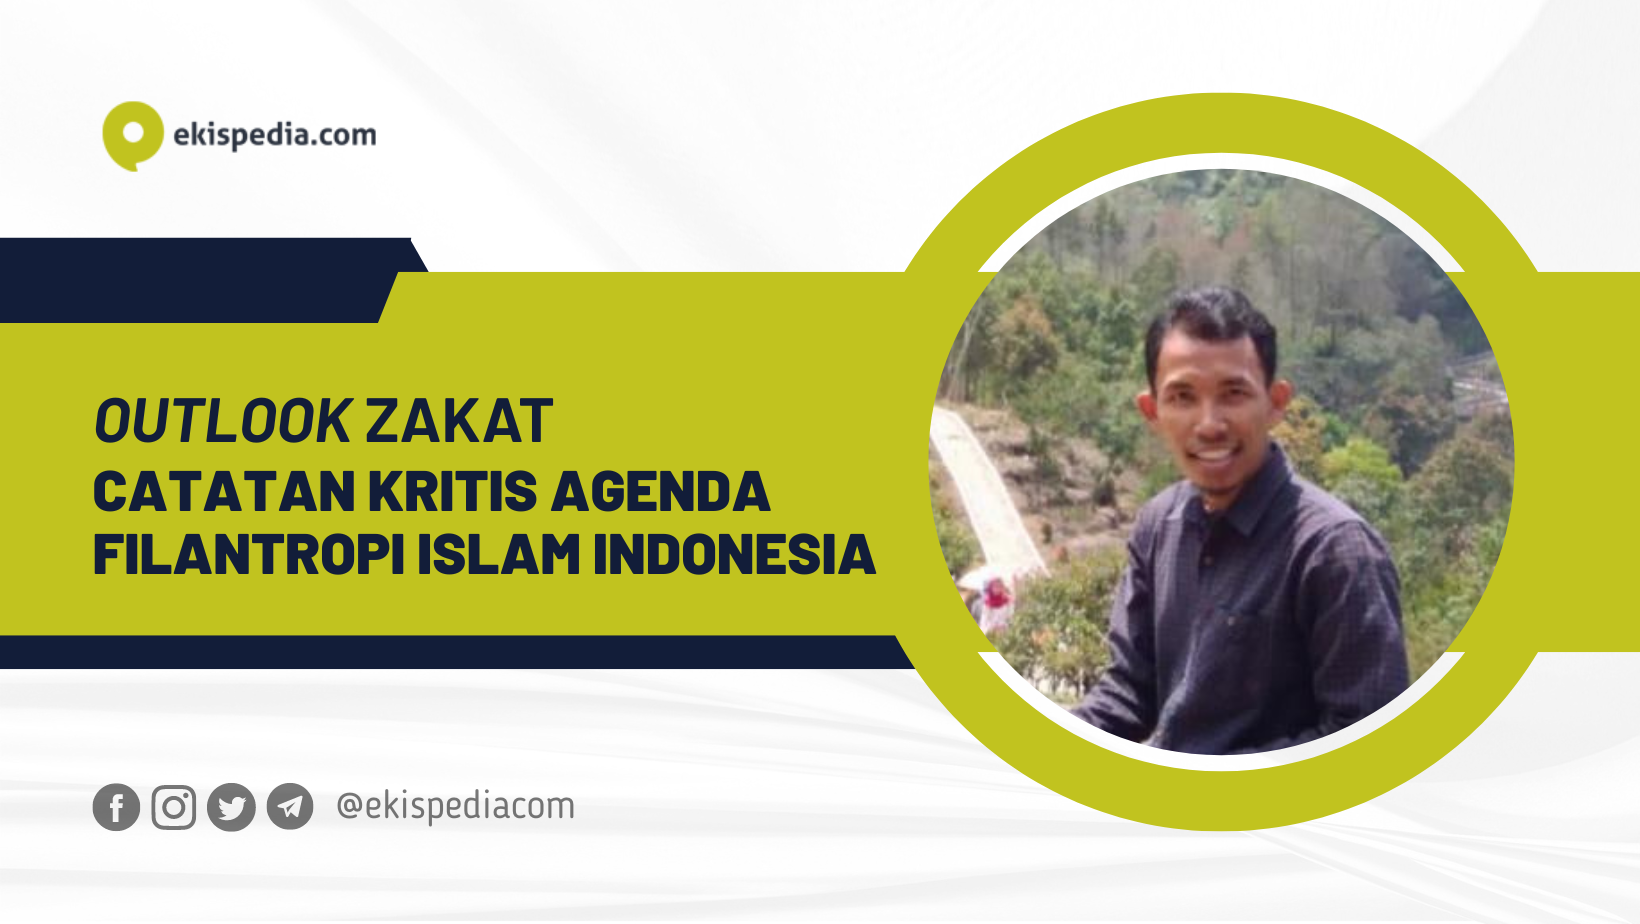 Outlook Zakat: Catatan Kritis Agenda Filantropi Islam Indonesia